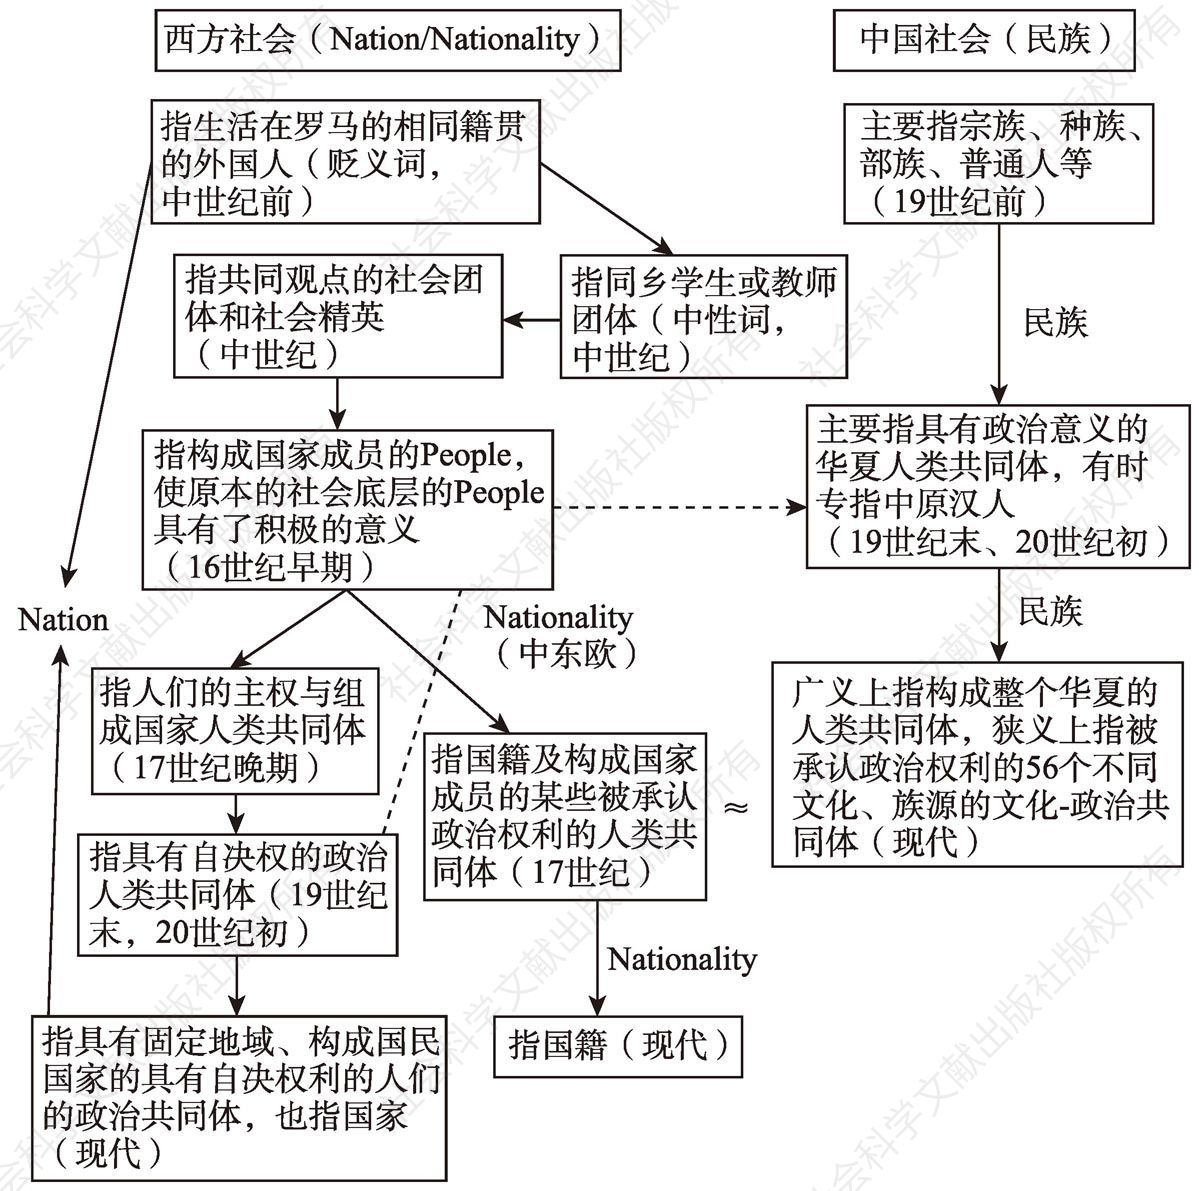 图1-1 中西方“民族、Nation/Nationality”所指流变